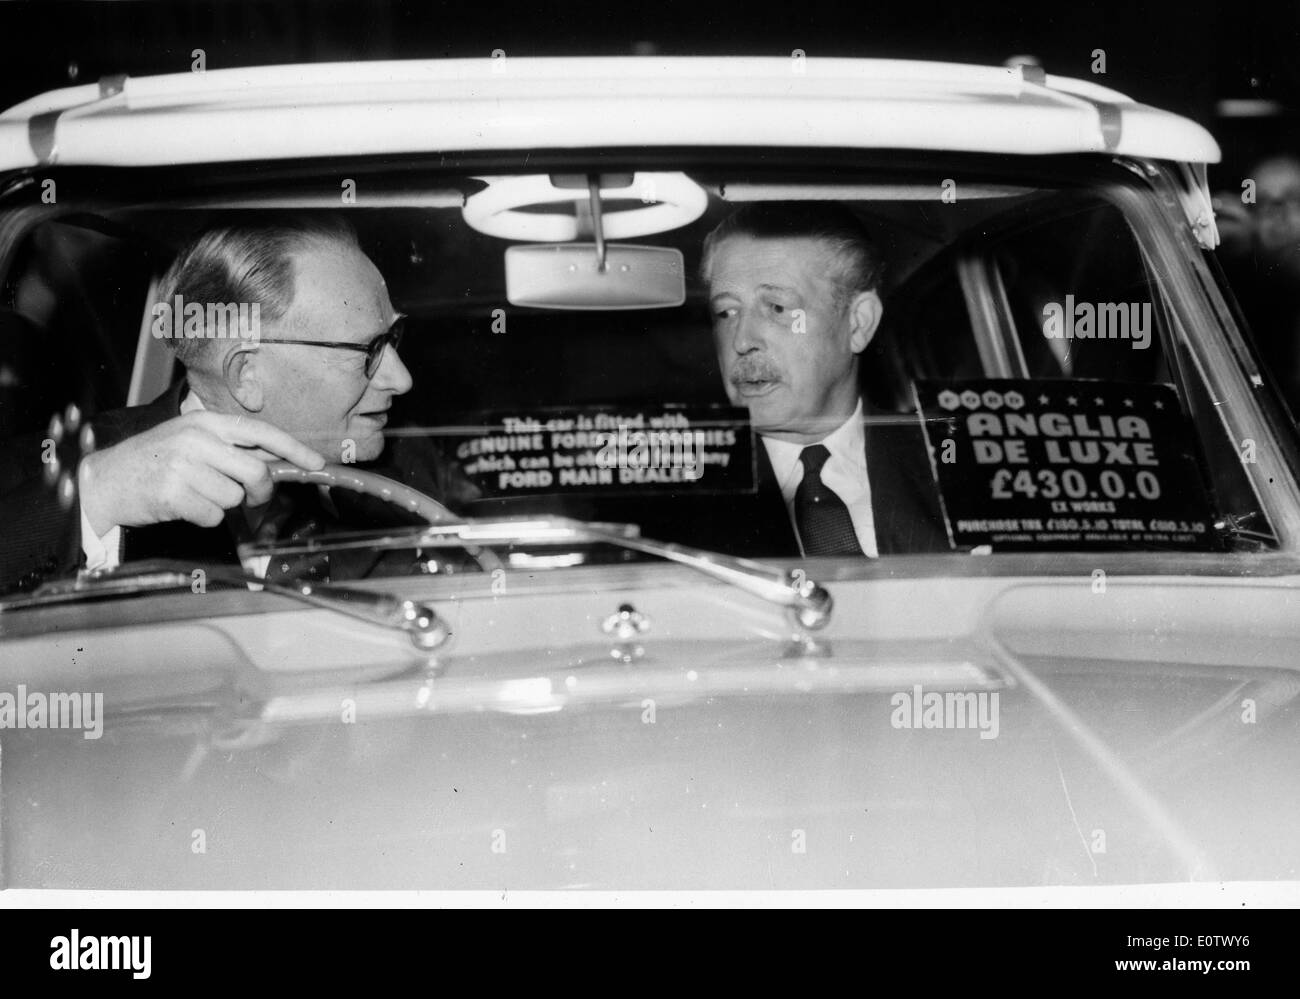 Harold Macmillan tries out new car at motor show Stock Photo